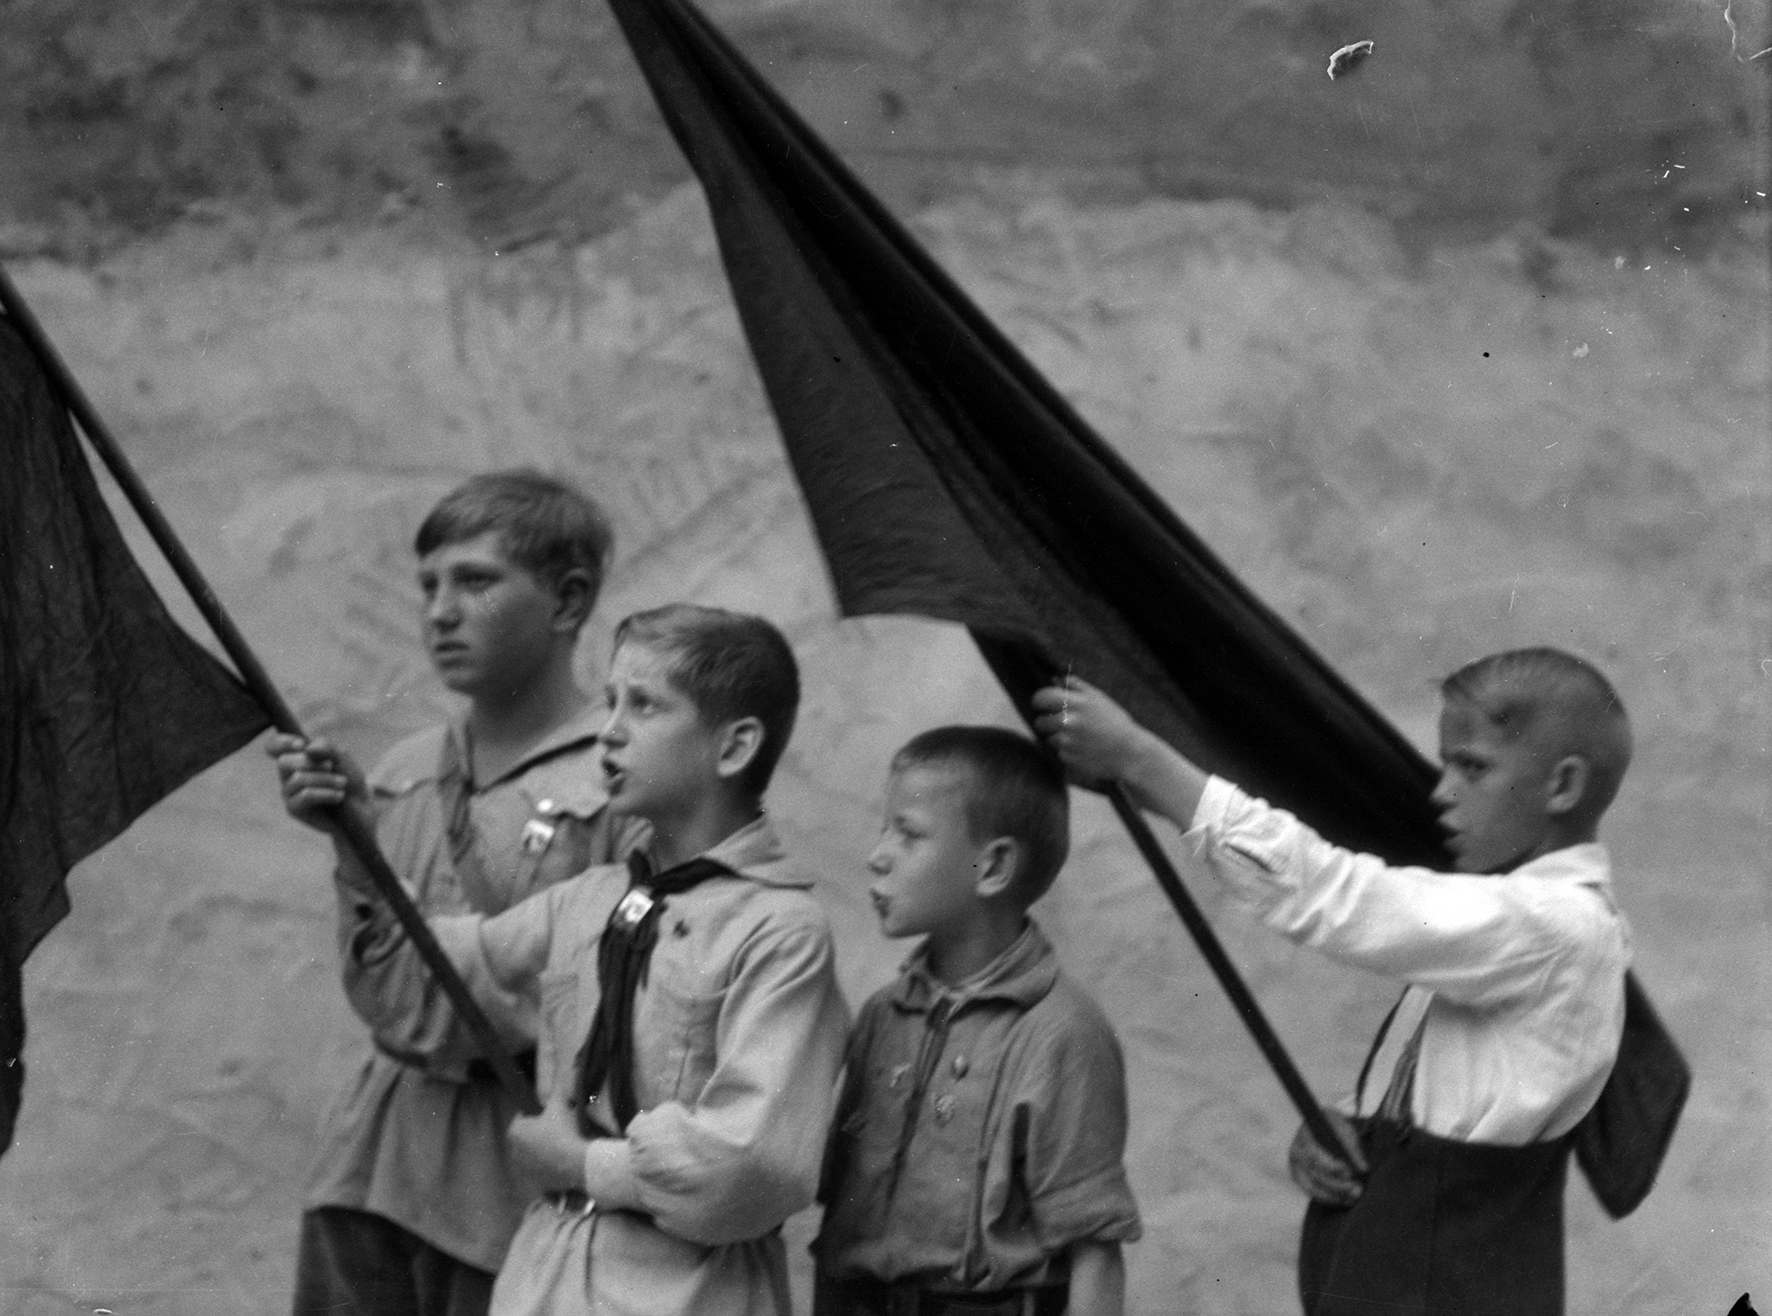 undefined - © Tina Modotti, Jovenes pioneros en la Union Sovietica, ca. 1932, Unione Sovietica